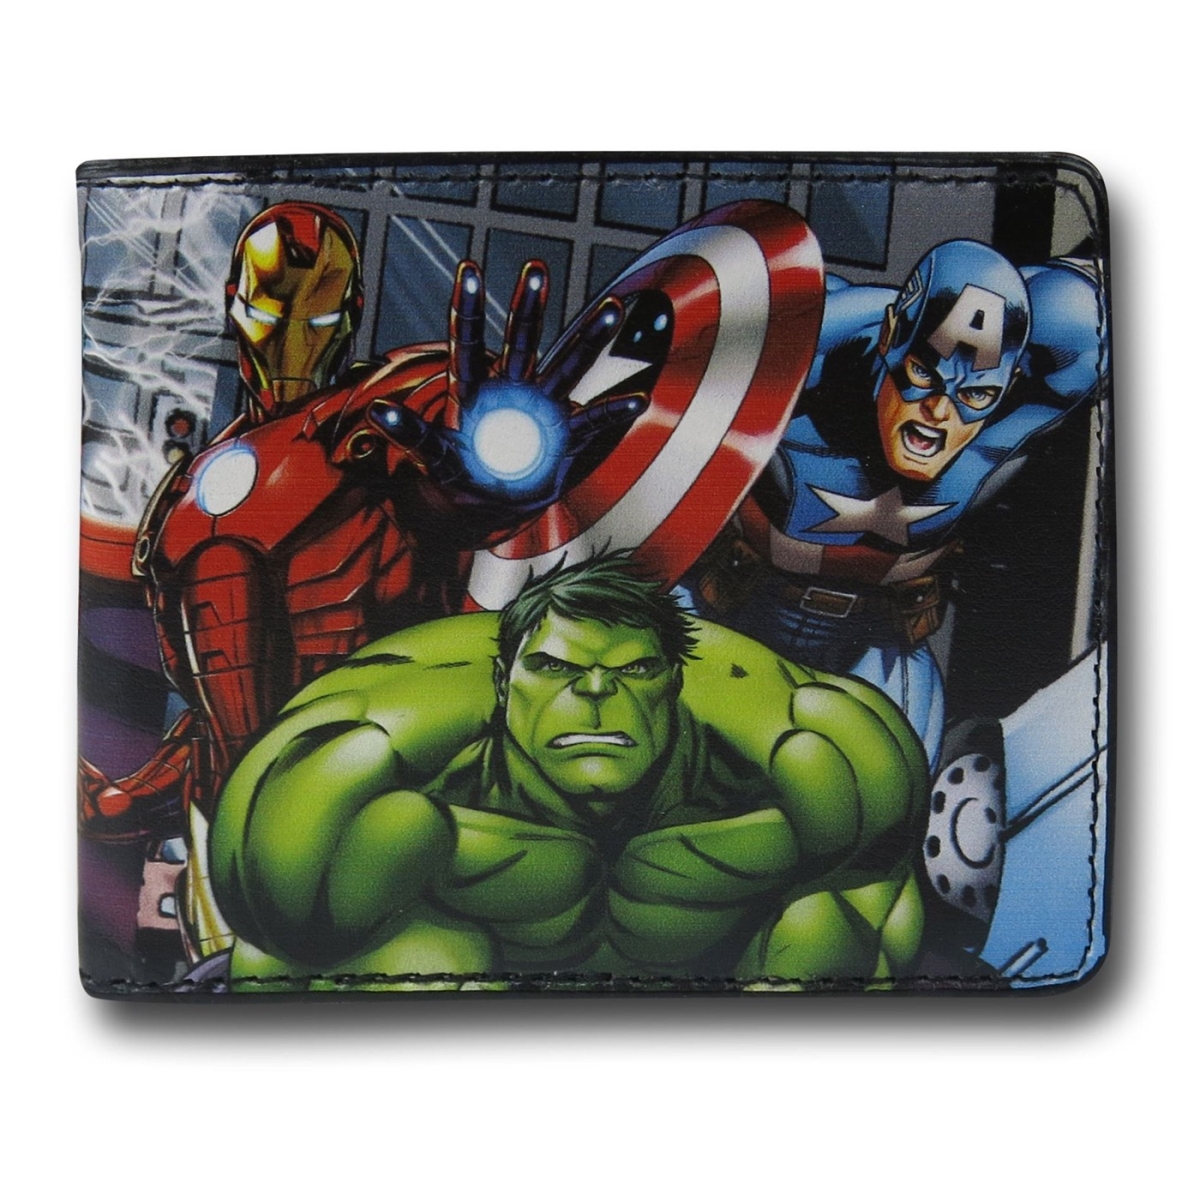 Picture of Avengers wlltavngassmblebi Avengers Assemble Bi-Fold Wallet